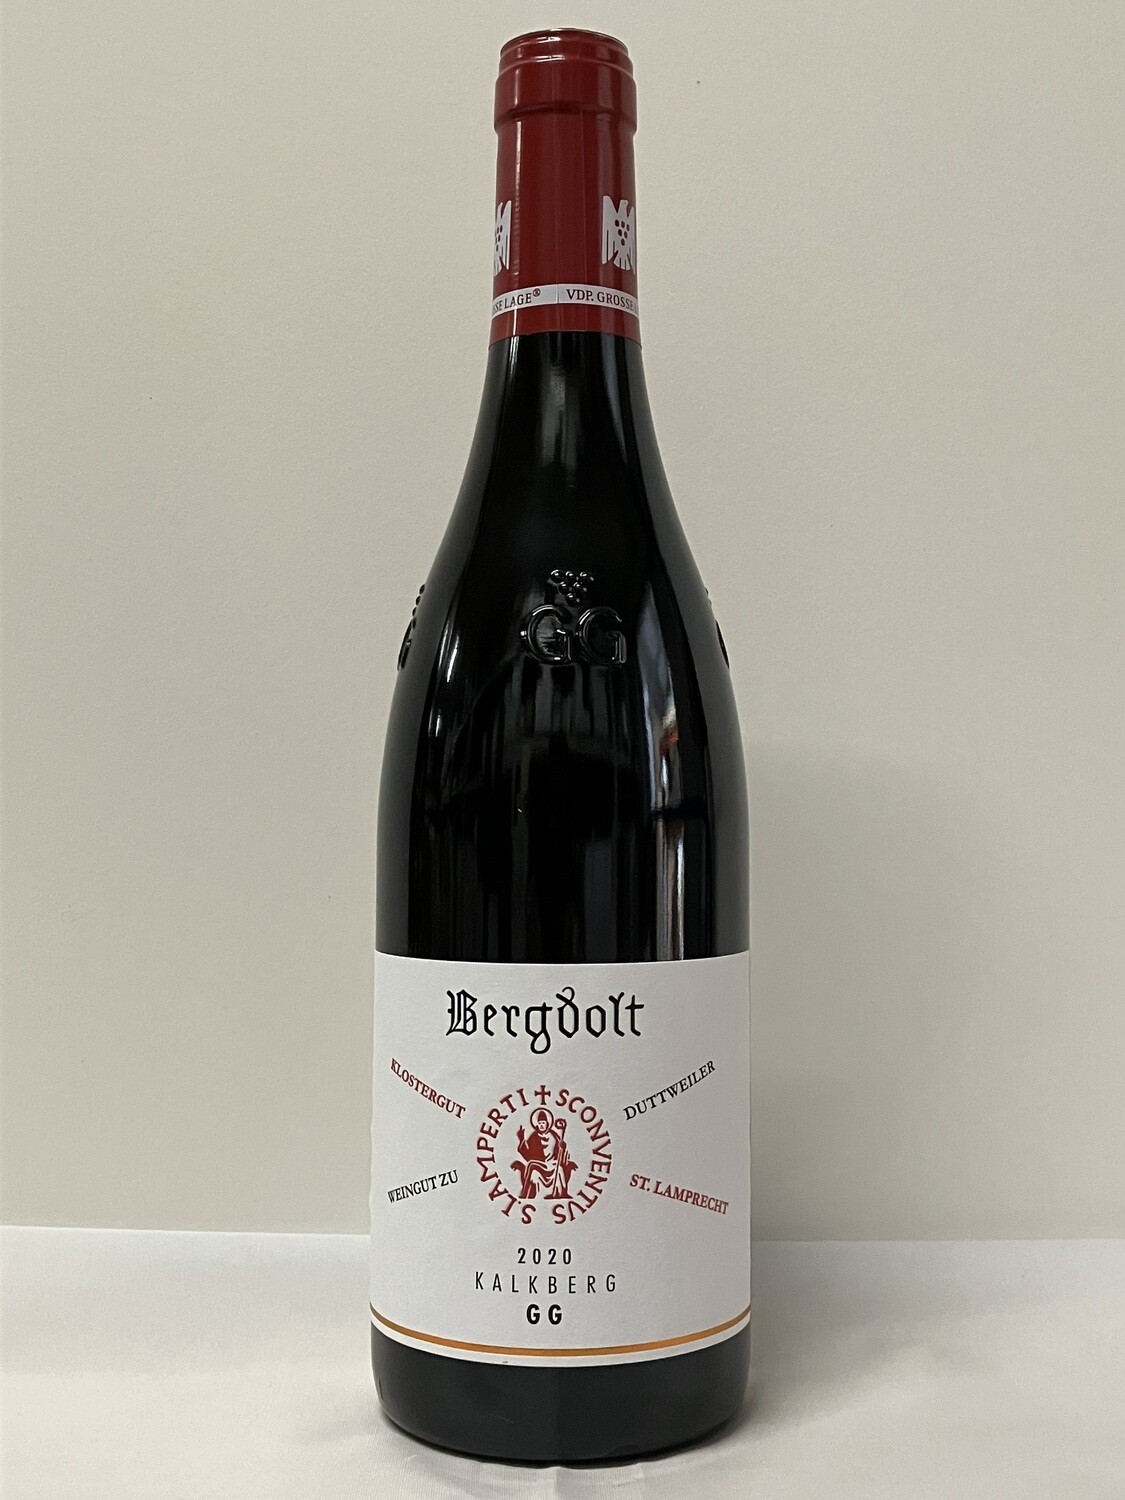 Pinot noir VDP.Grosses Gewächs 2020 droog Duttweiler Kalkberg Bergdolt (Pfalz)